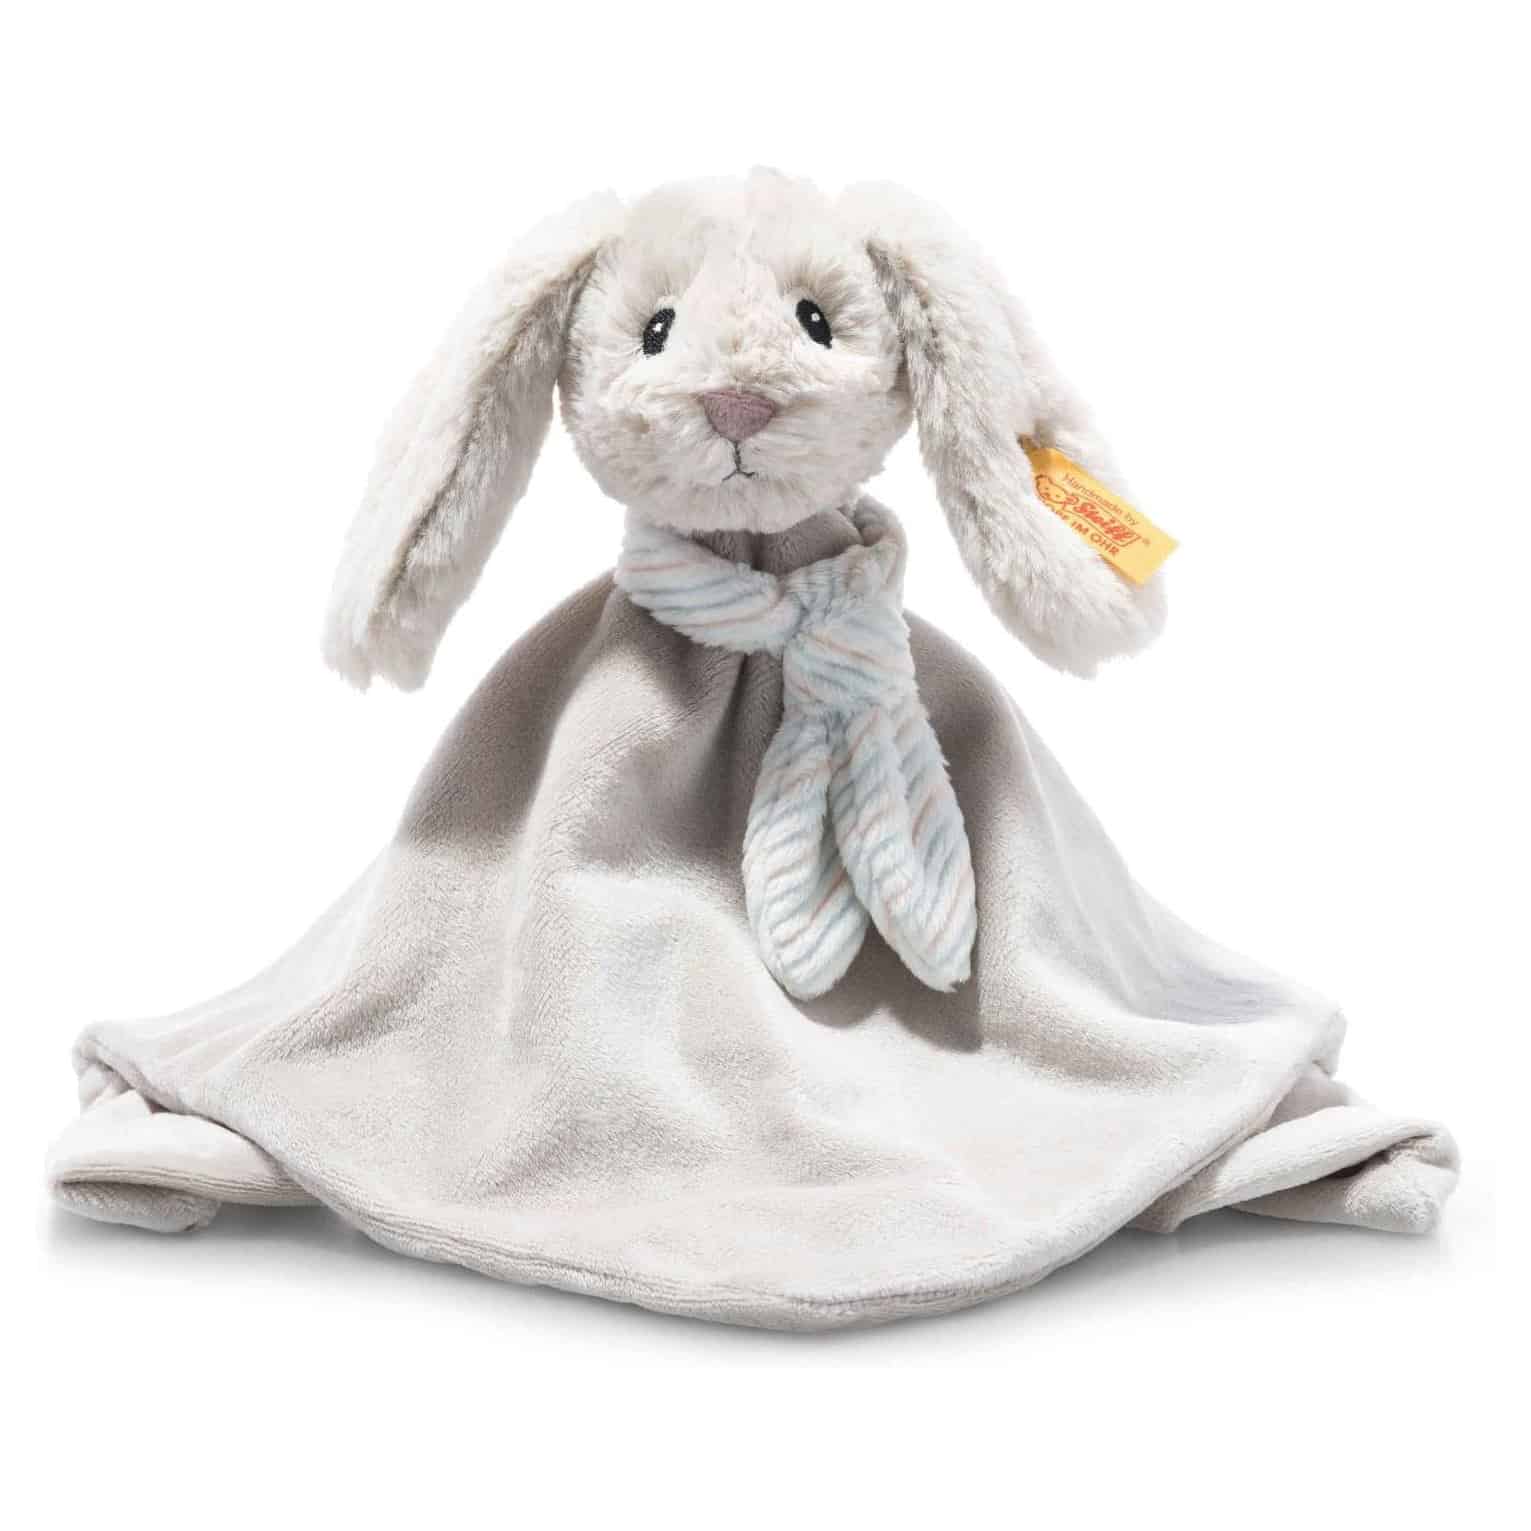 Steiff 242250 Soft Cuddly Friends Hoppie Rabbit Comforter 26 cm Soft ...